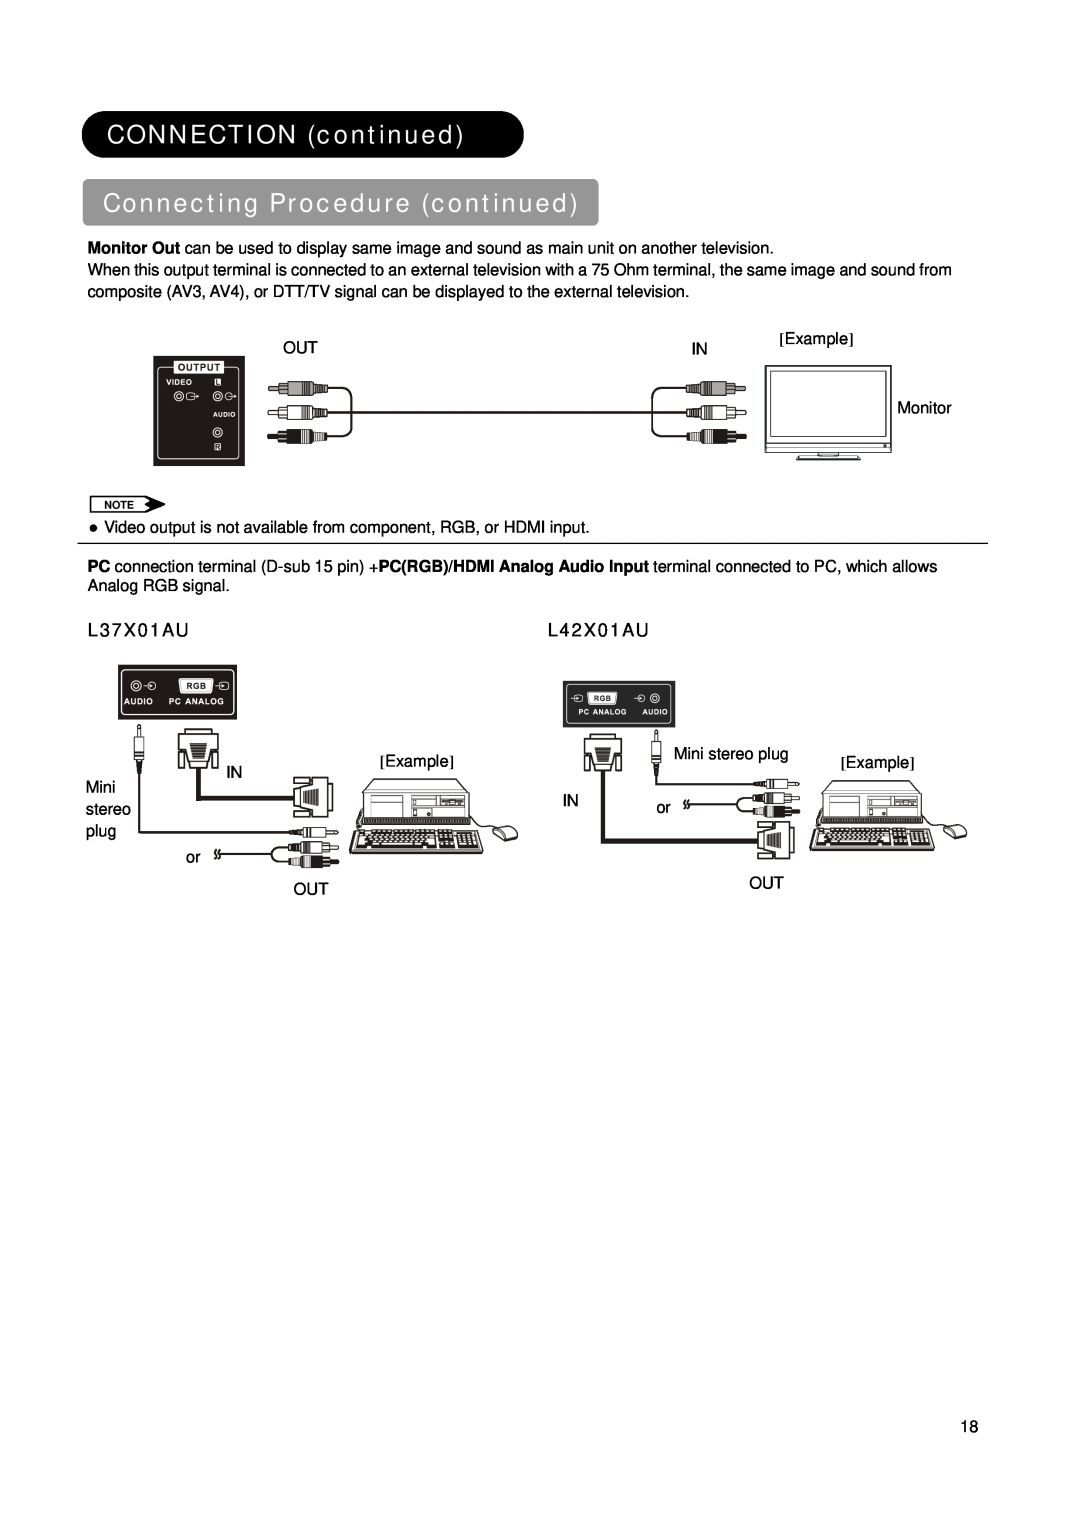 Hitachi L42X01AU manual CONNECTION continued Connecting Procedure continued, L37X01AU 